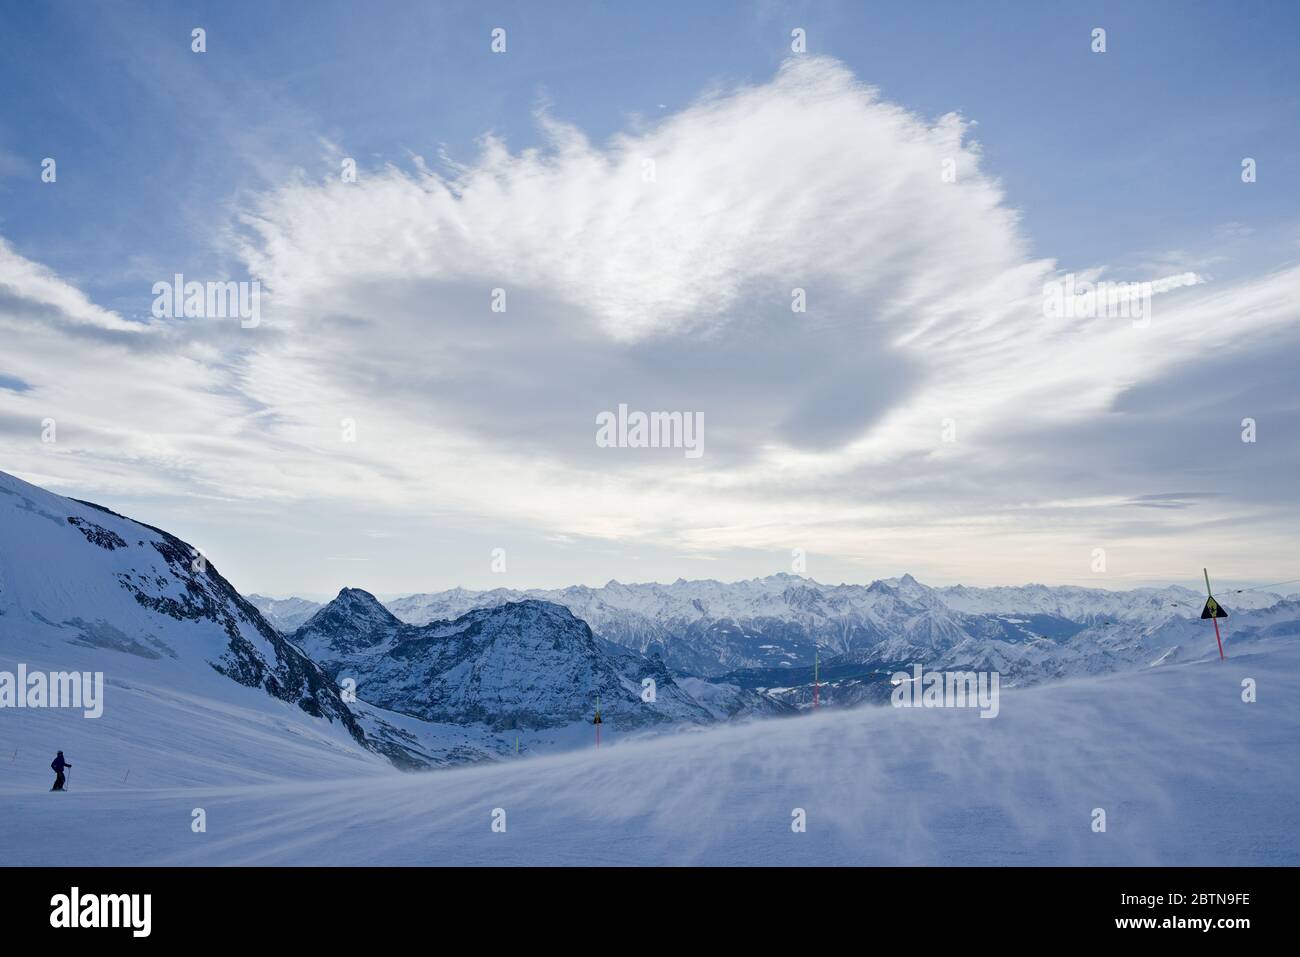 Un nuage en forme de cœur flotte sur une piste de ski dans le cadre d'une vue panoramique sur la montagne dans les alpes italiennes Banque D'Images